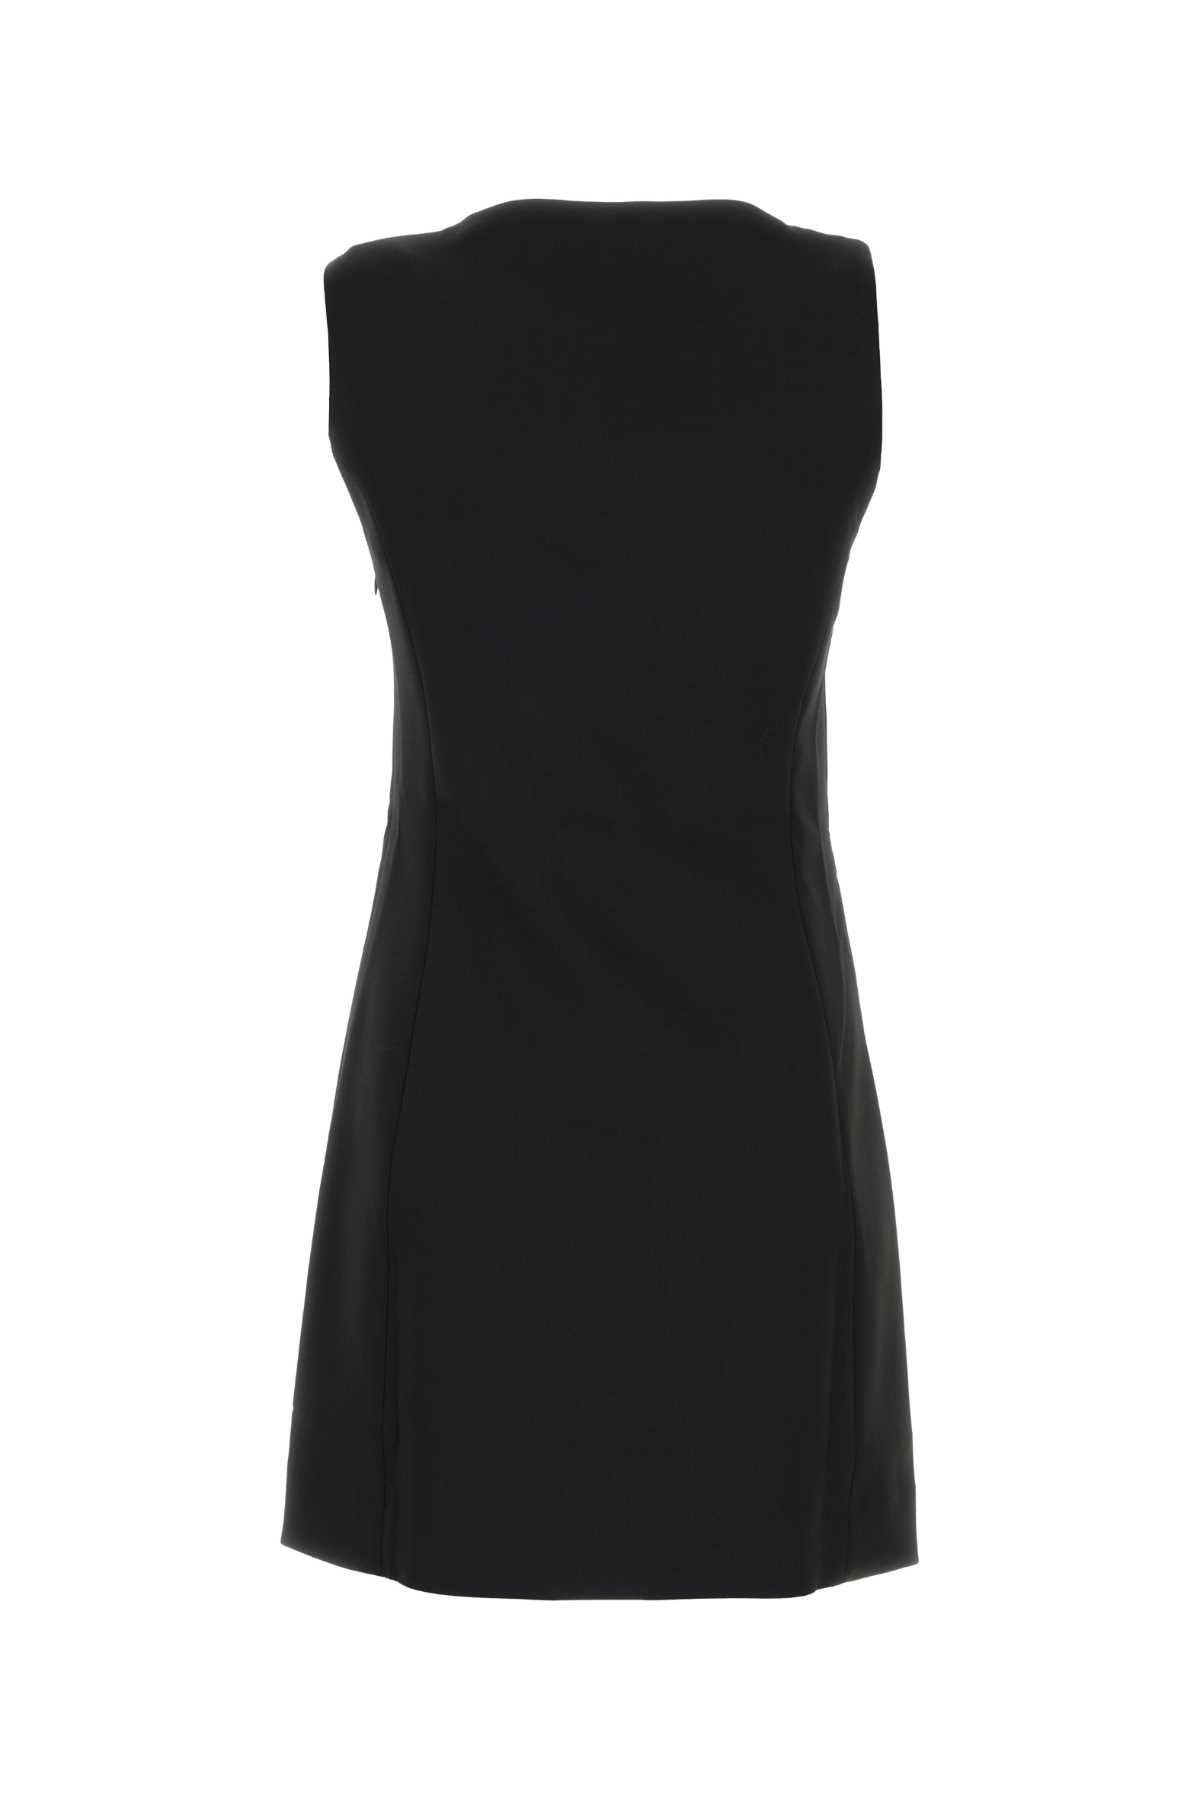 Coperni Black Stretch Jersey Fitted Dress